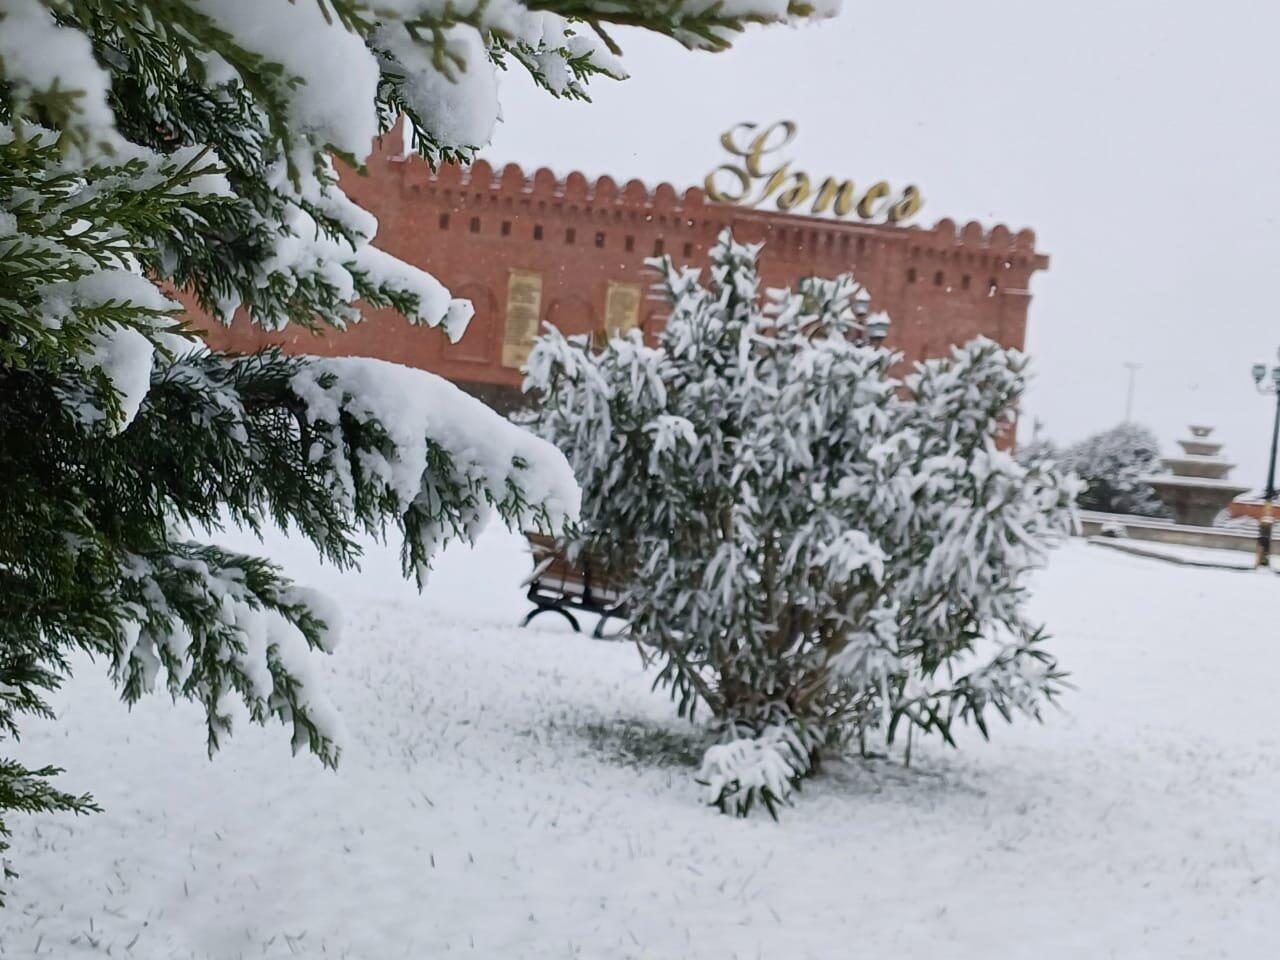 Синоптики о снегопаде в Азербайджане